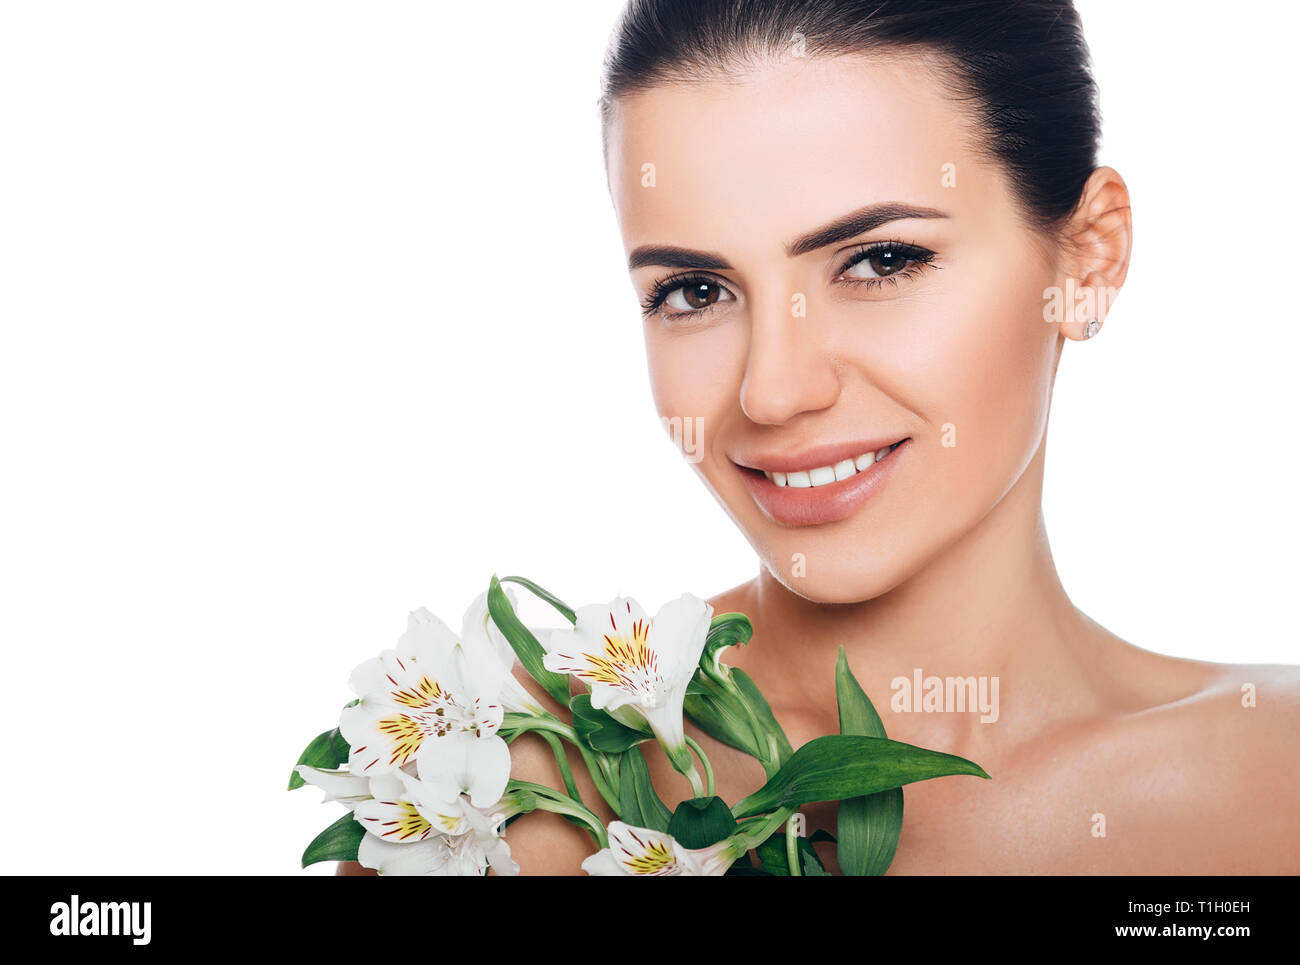 Bellezza ritratto di donna sorridente con un fresco e la pelle lucida. Faccia perfetta, bellezza naturale Foto Stock